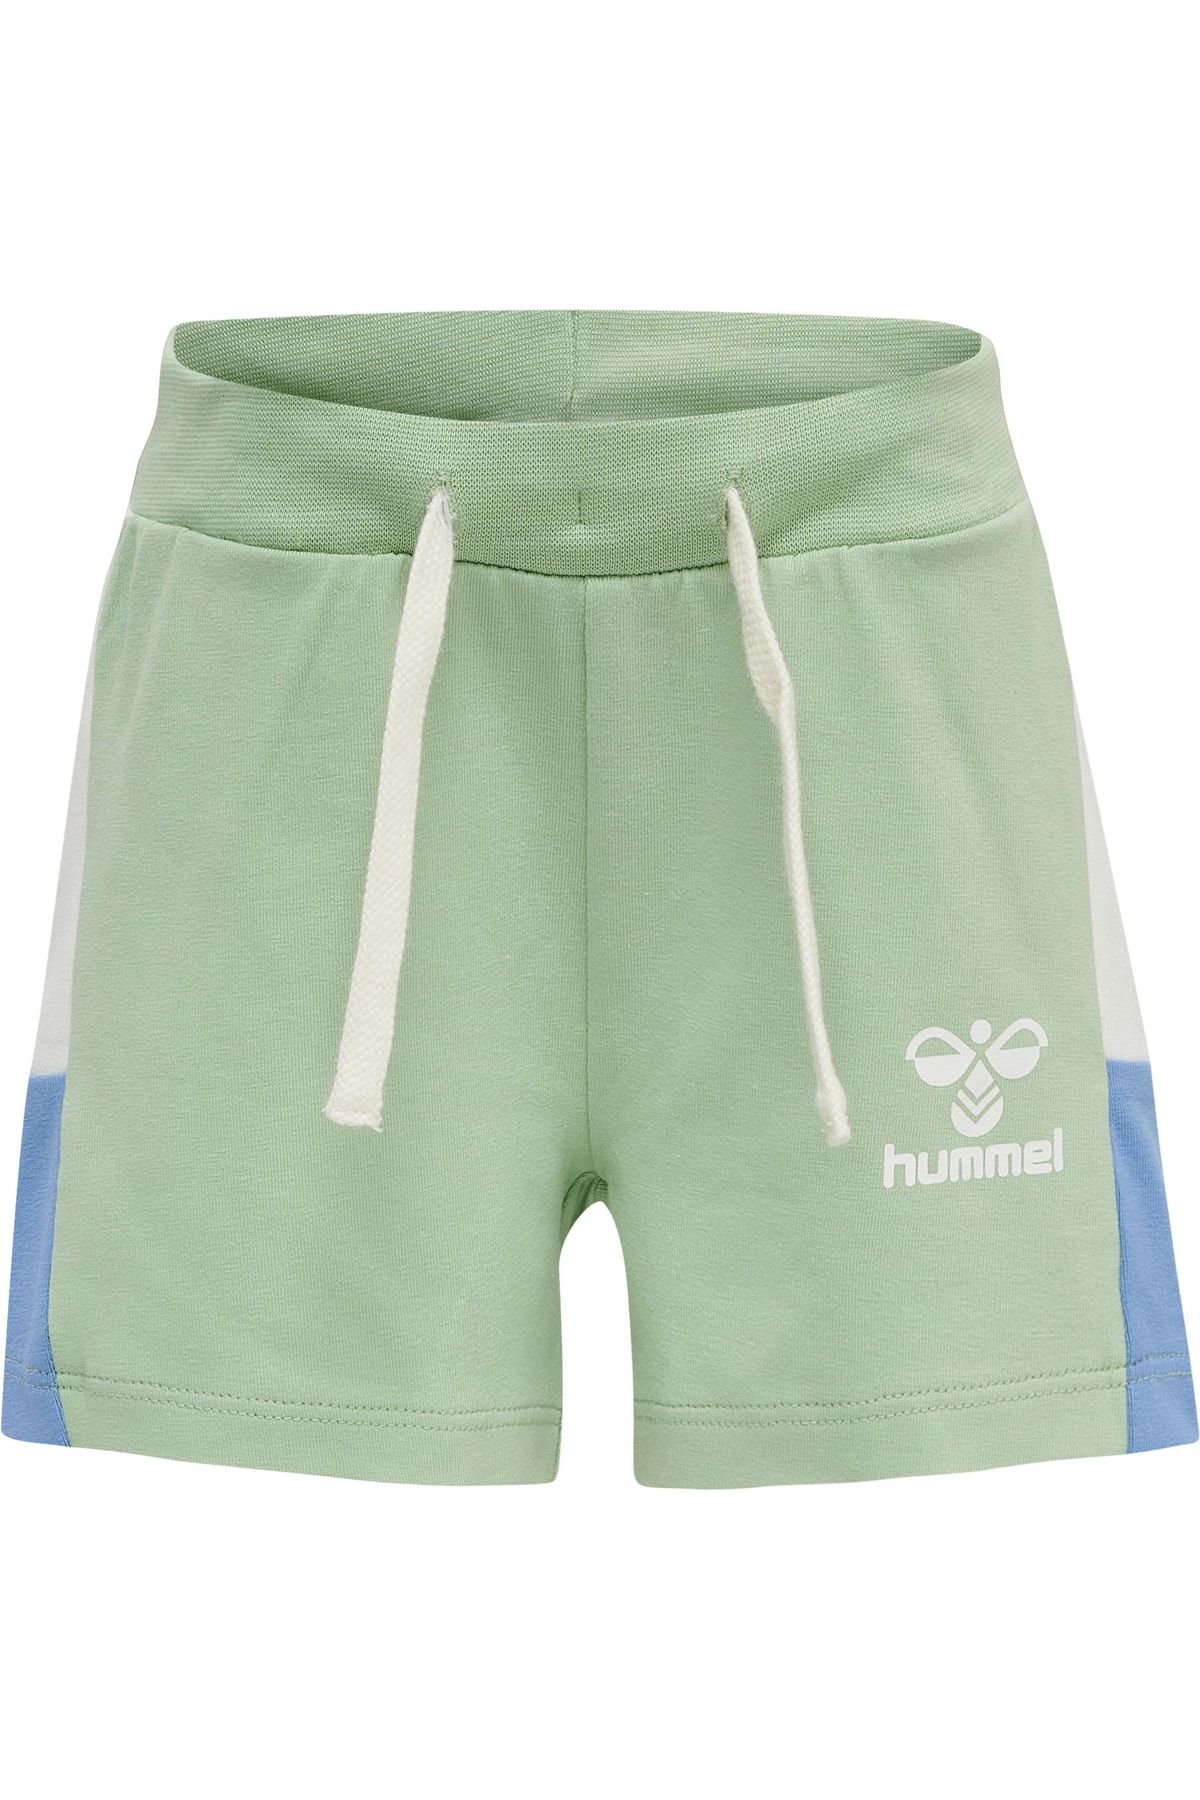 Trendyol - Mittlerer - Bund HUMMEL - Grün Shorts